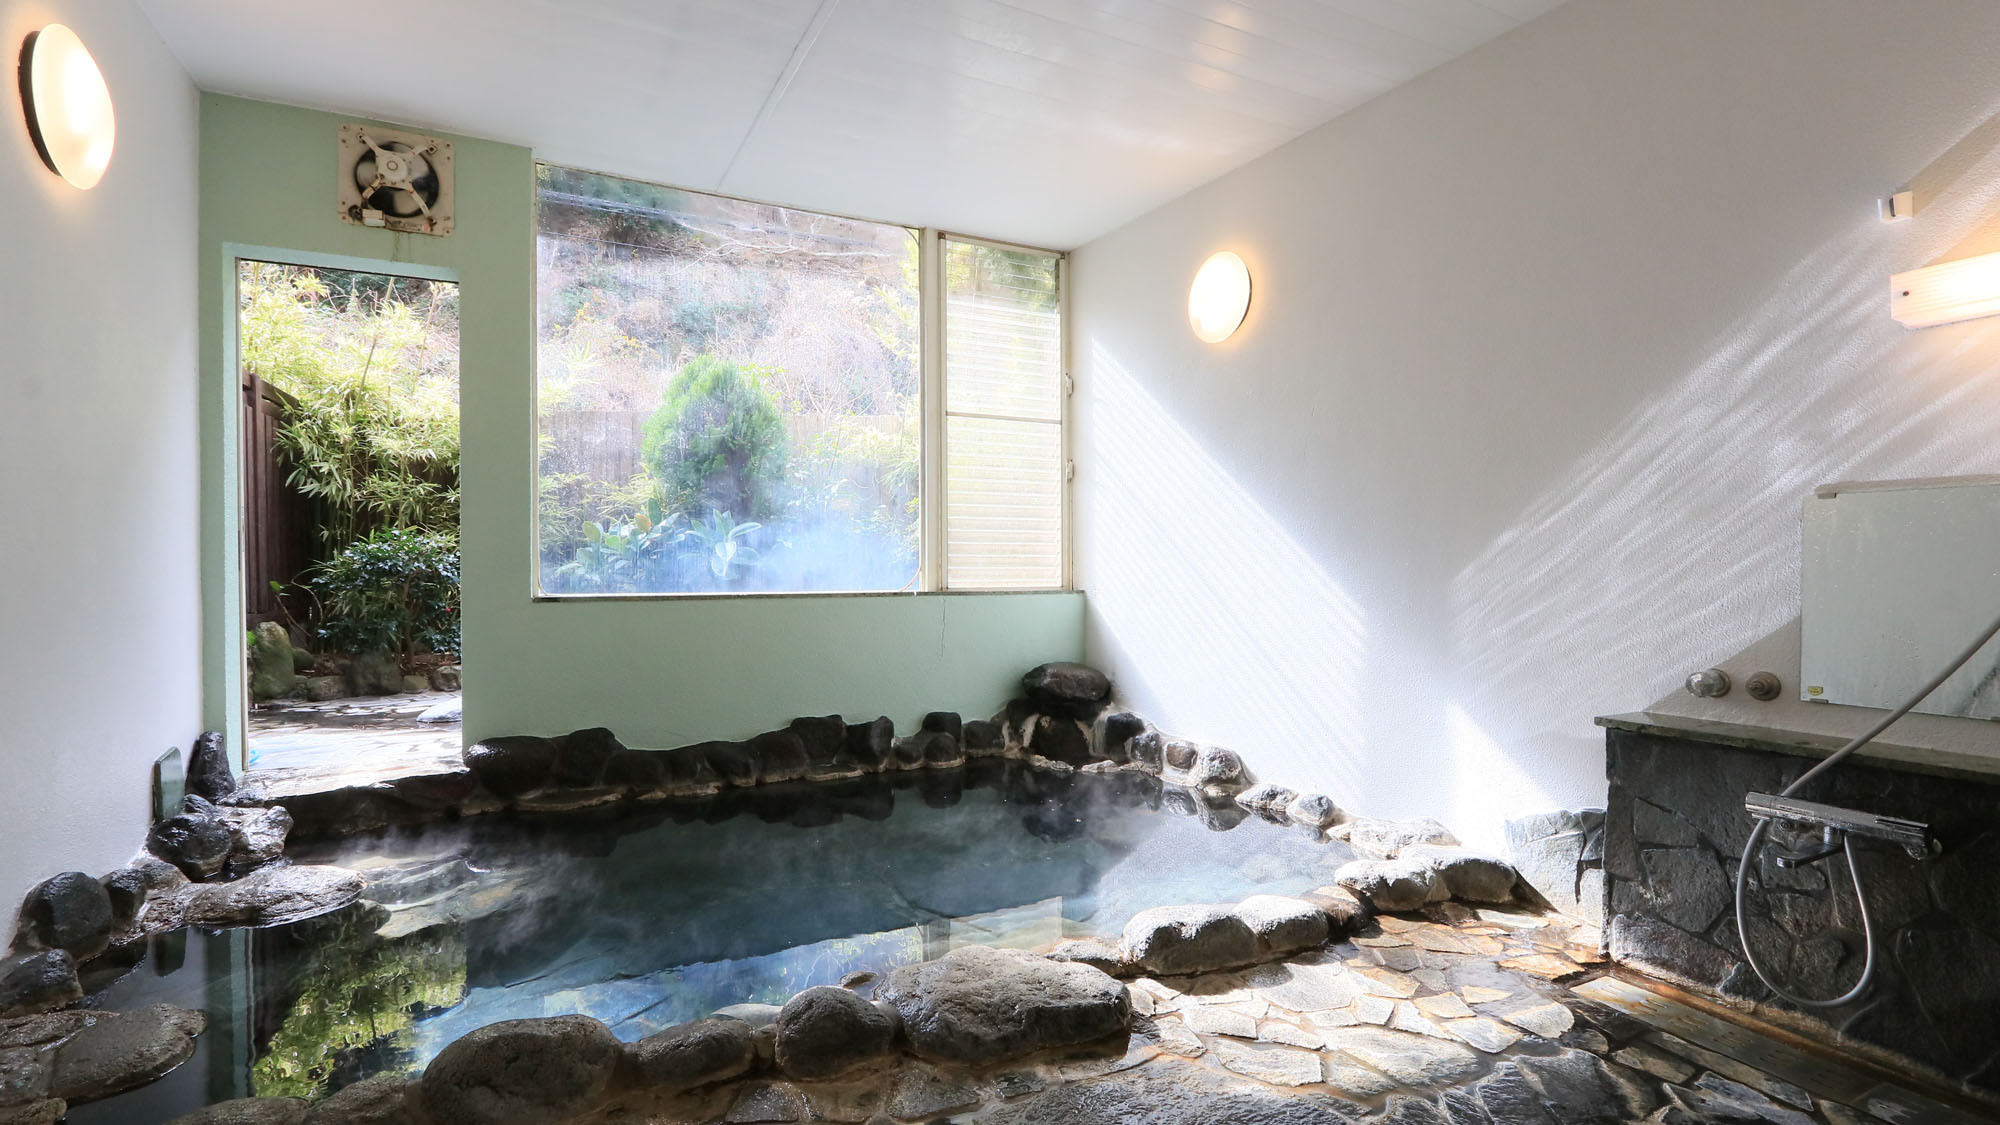 浴場 -Bath-源泉100％かけ流しの石風呂です 客室の露天風呂とはまた違った寛ぎを感じます